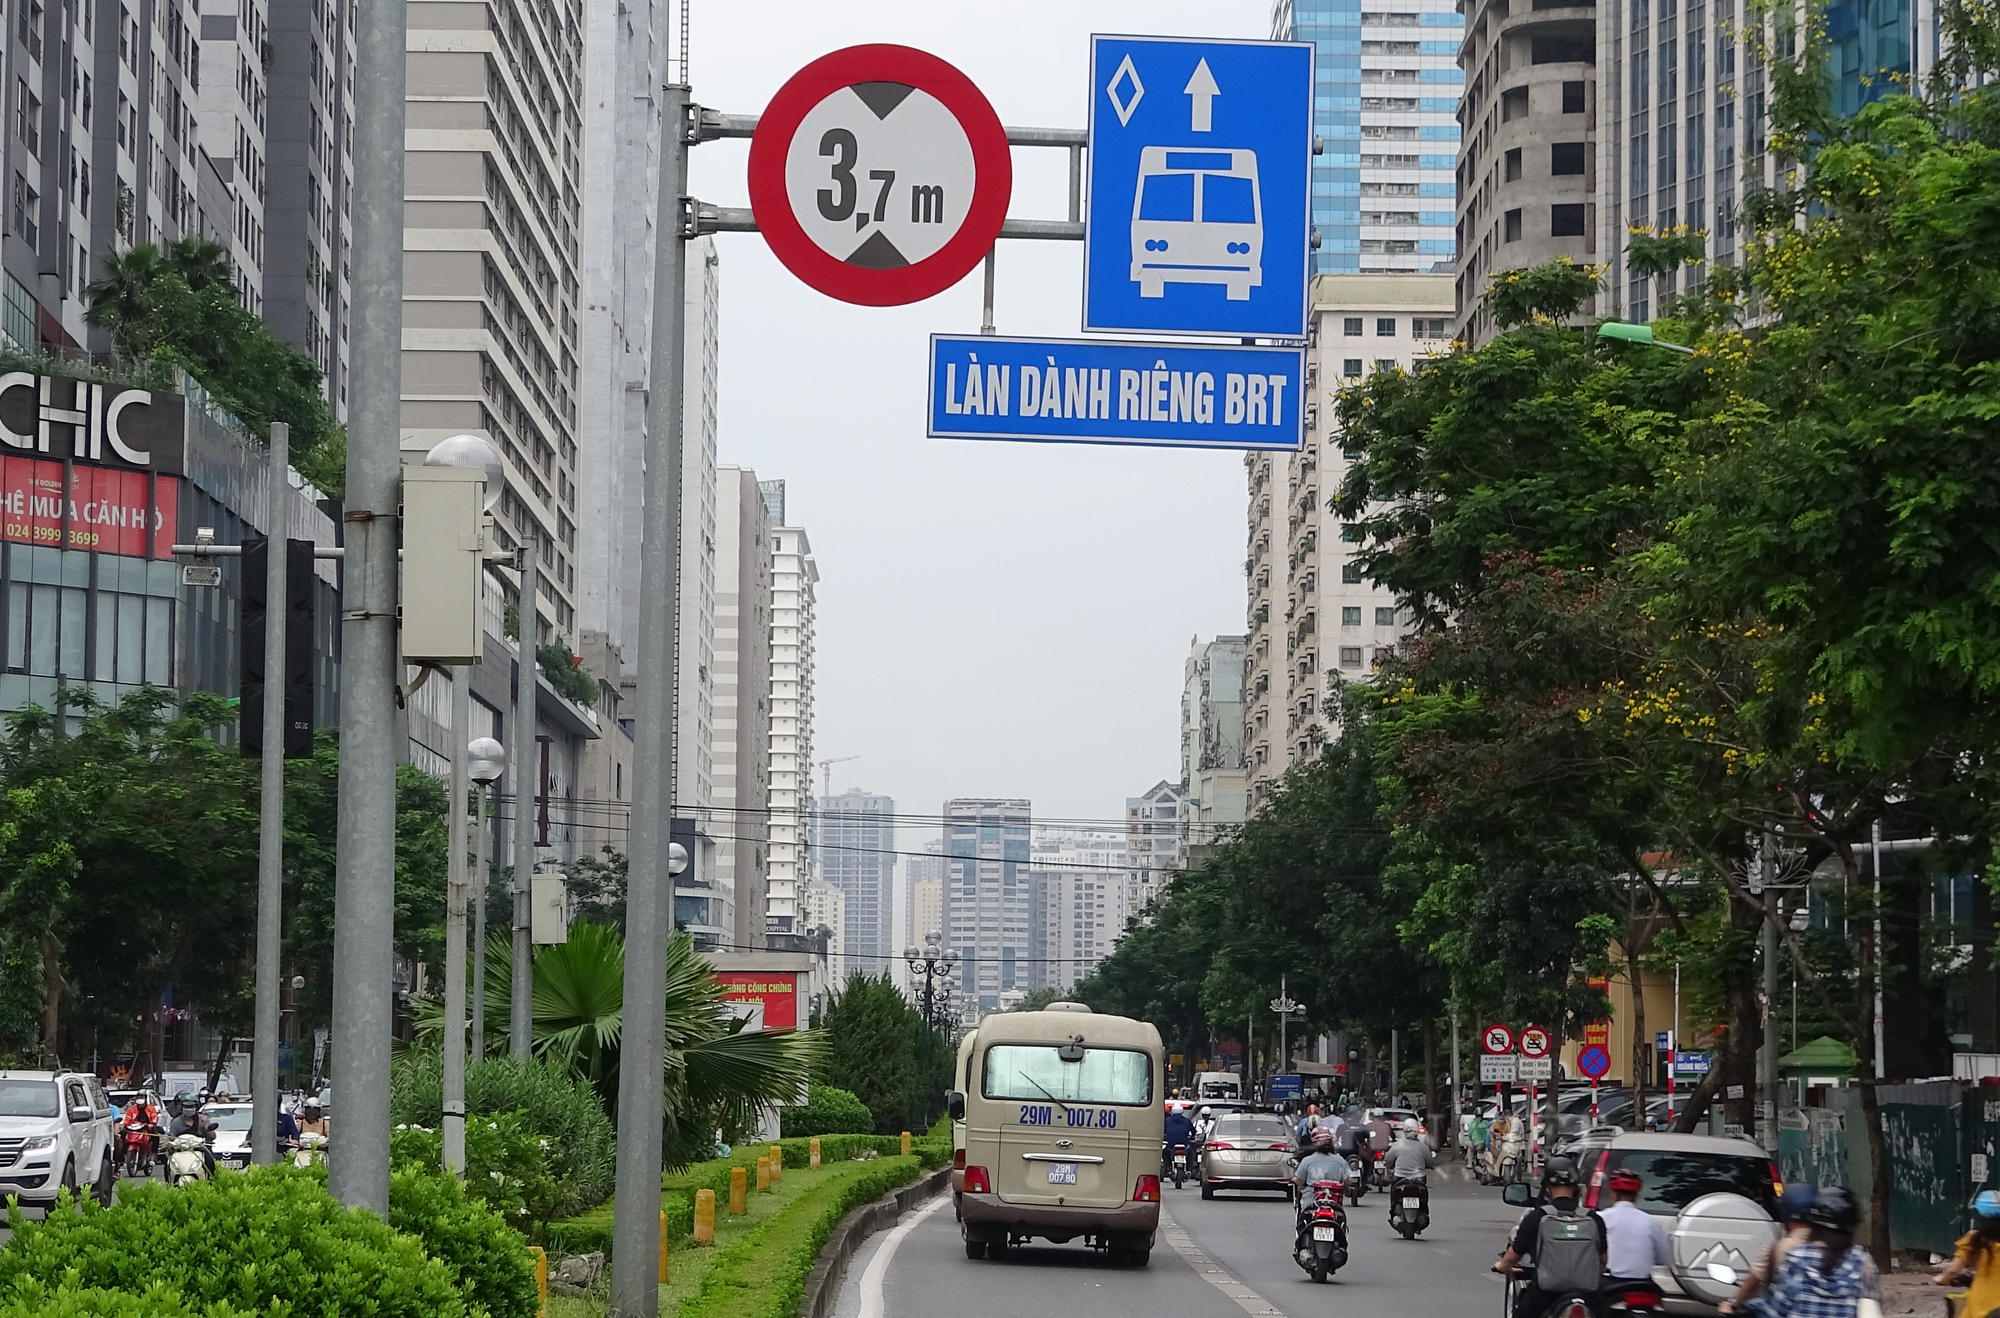 Hà Nội: Ngán ngẩm cảnh chung đường với xe buýt nhanh BRT - Ảnh 6.